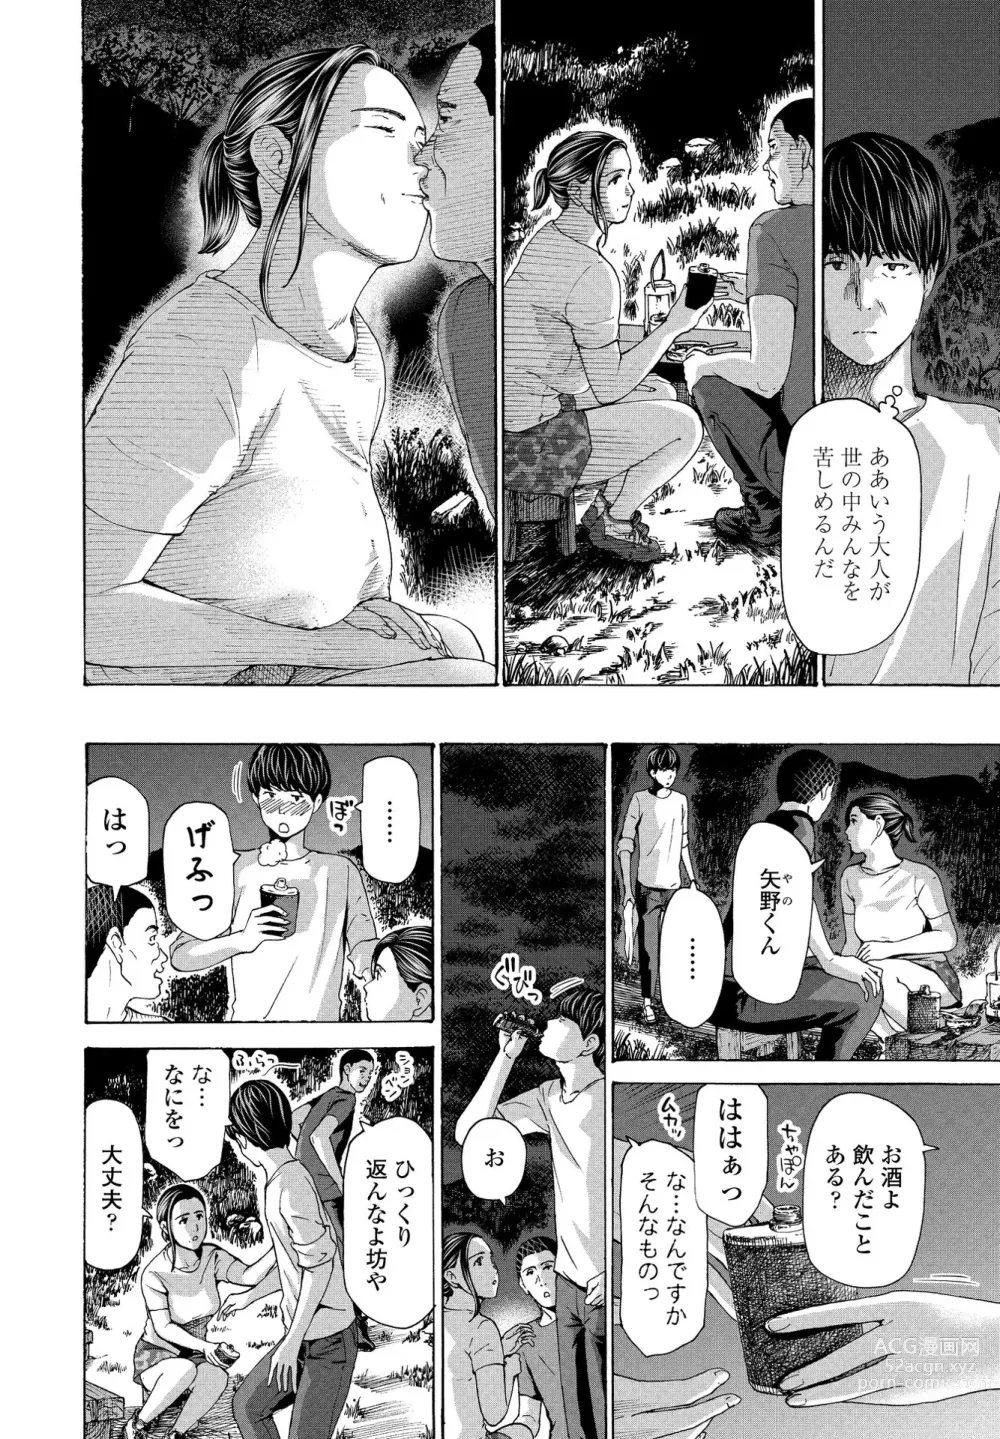 Page 42 of manga Hinangoya nite